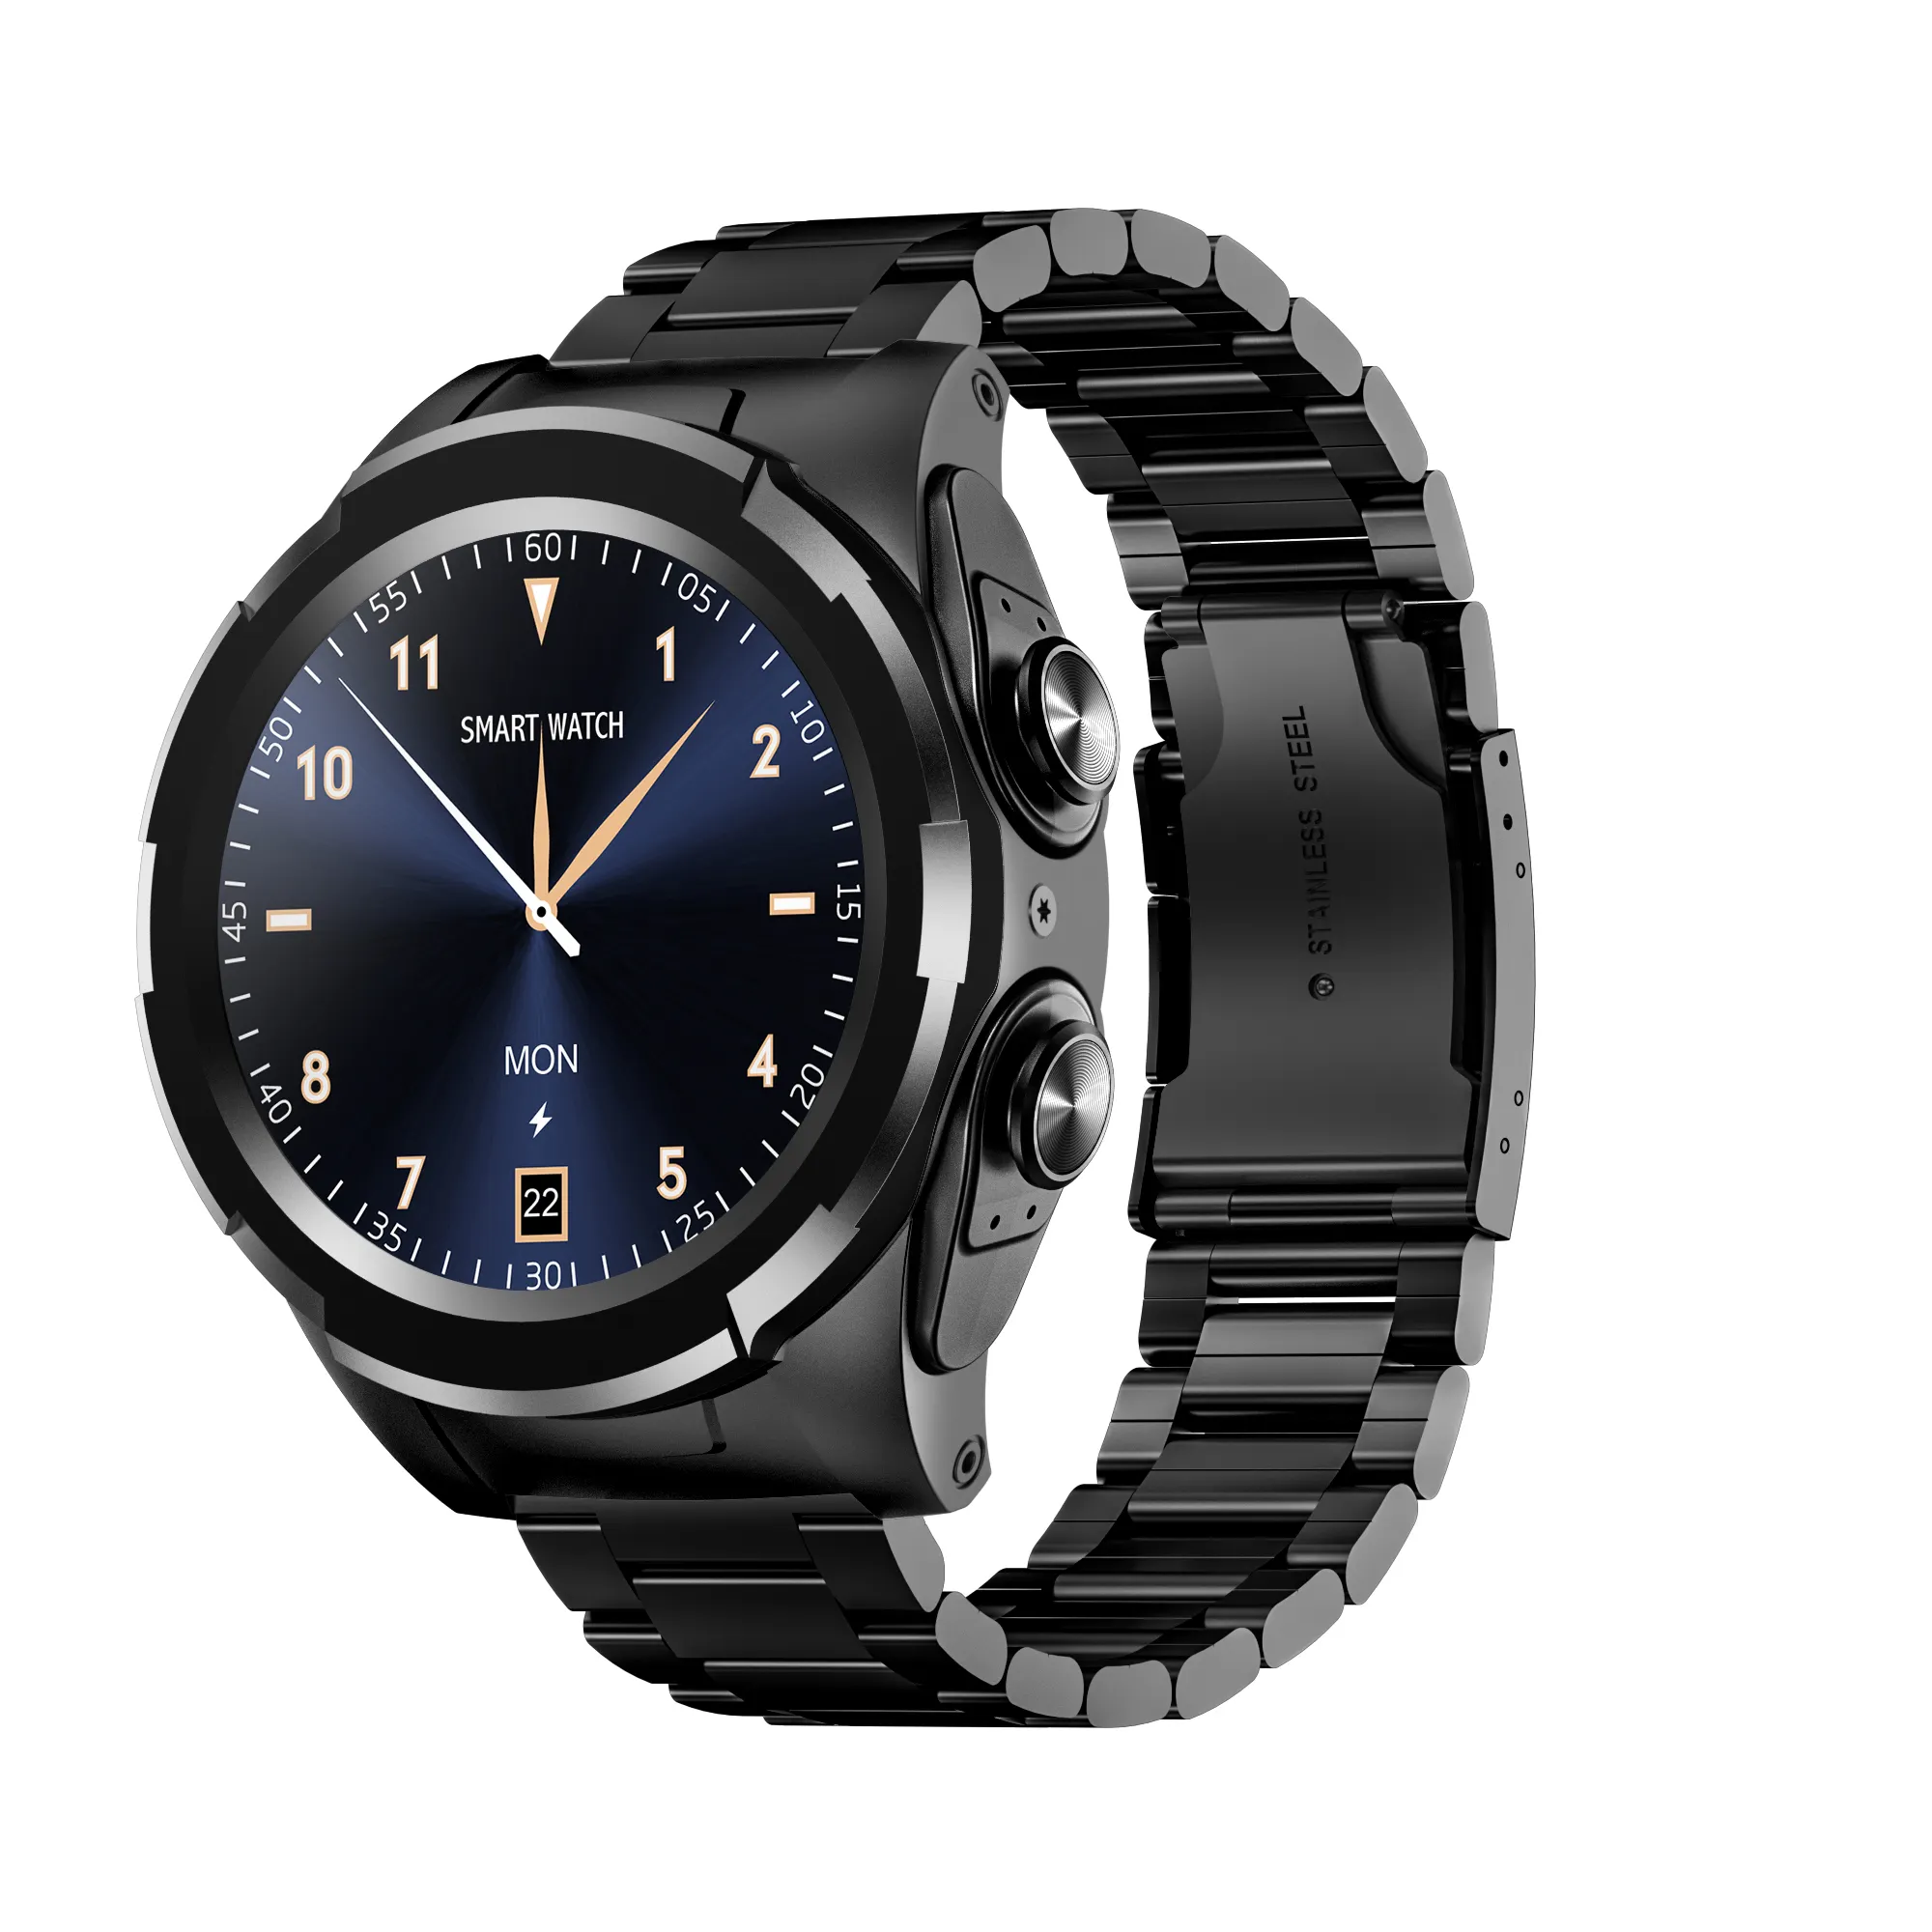 JM06 trend ürünleri 2 In 1 Smartwatch Fashional elektronik paslanmaz kayış akıllı saat ile TWS kulakiçi JM06